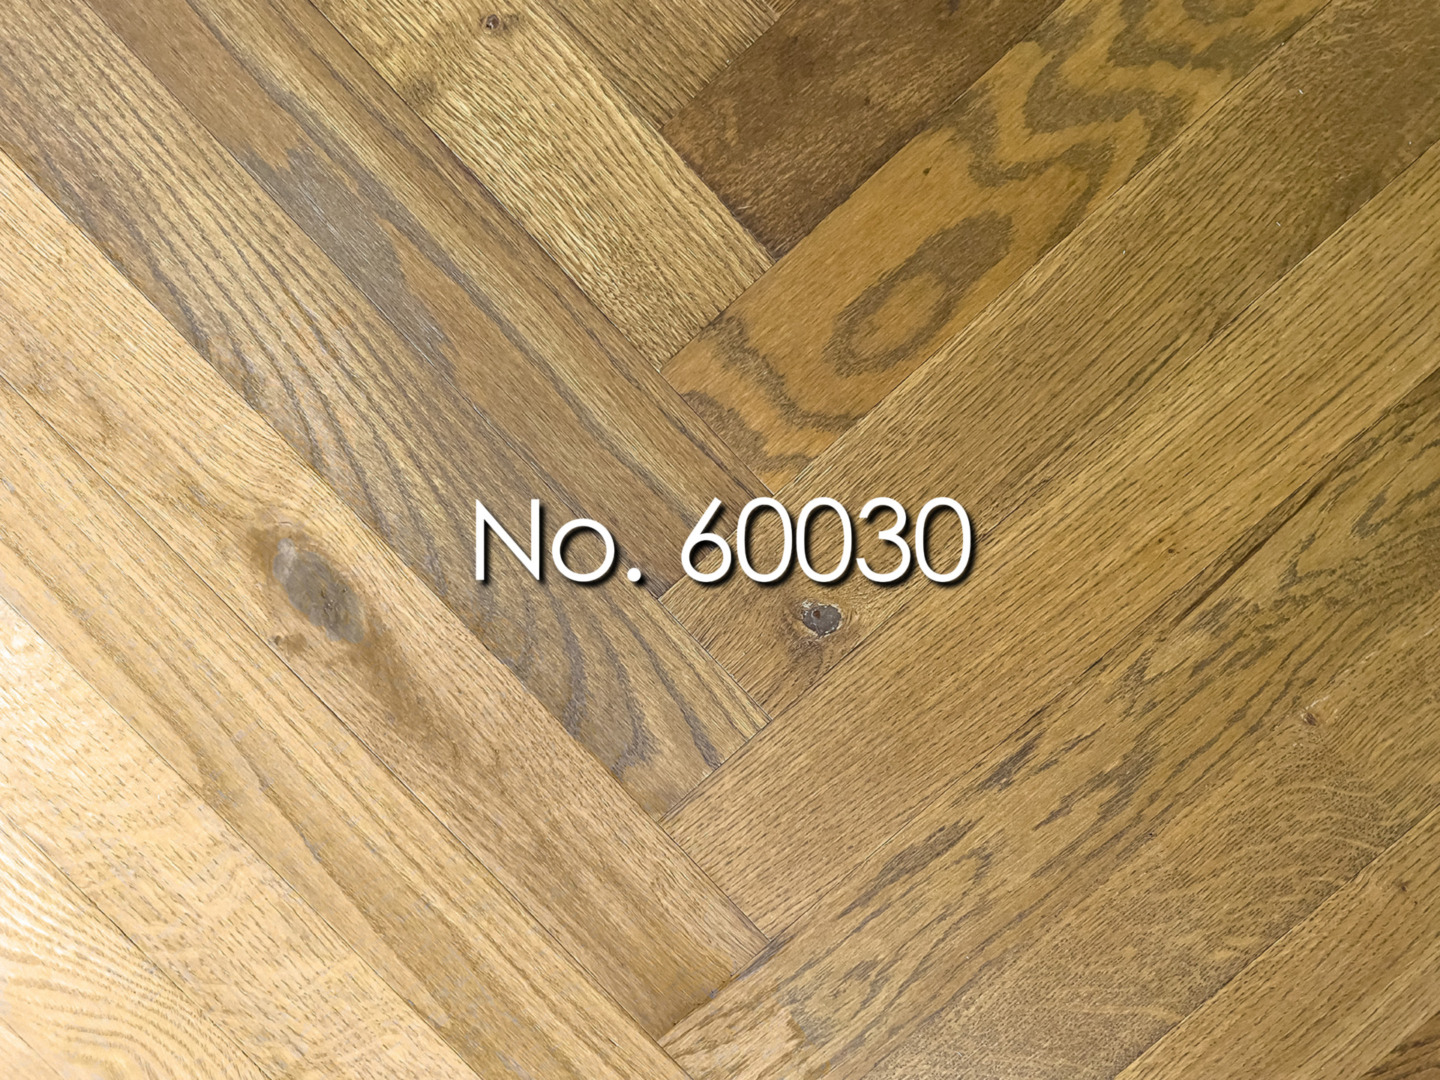 No. 60030